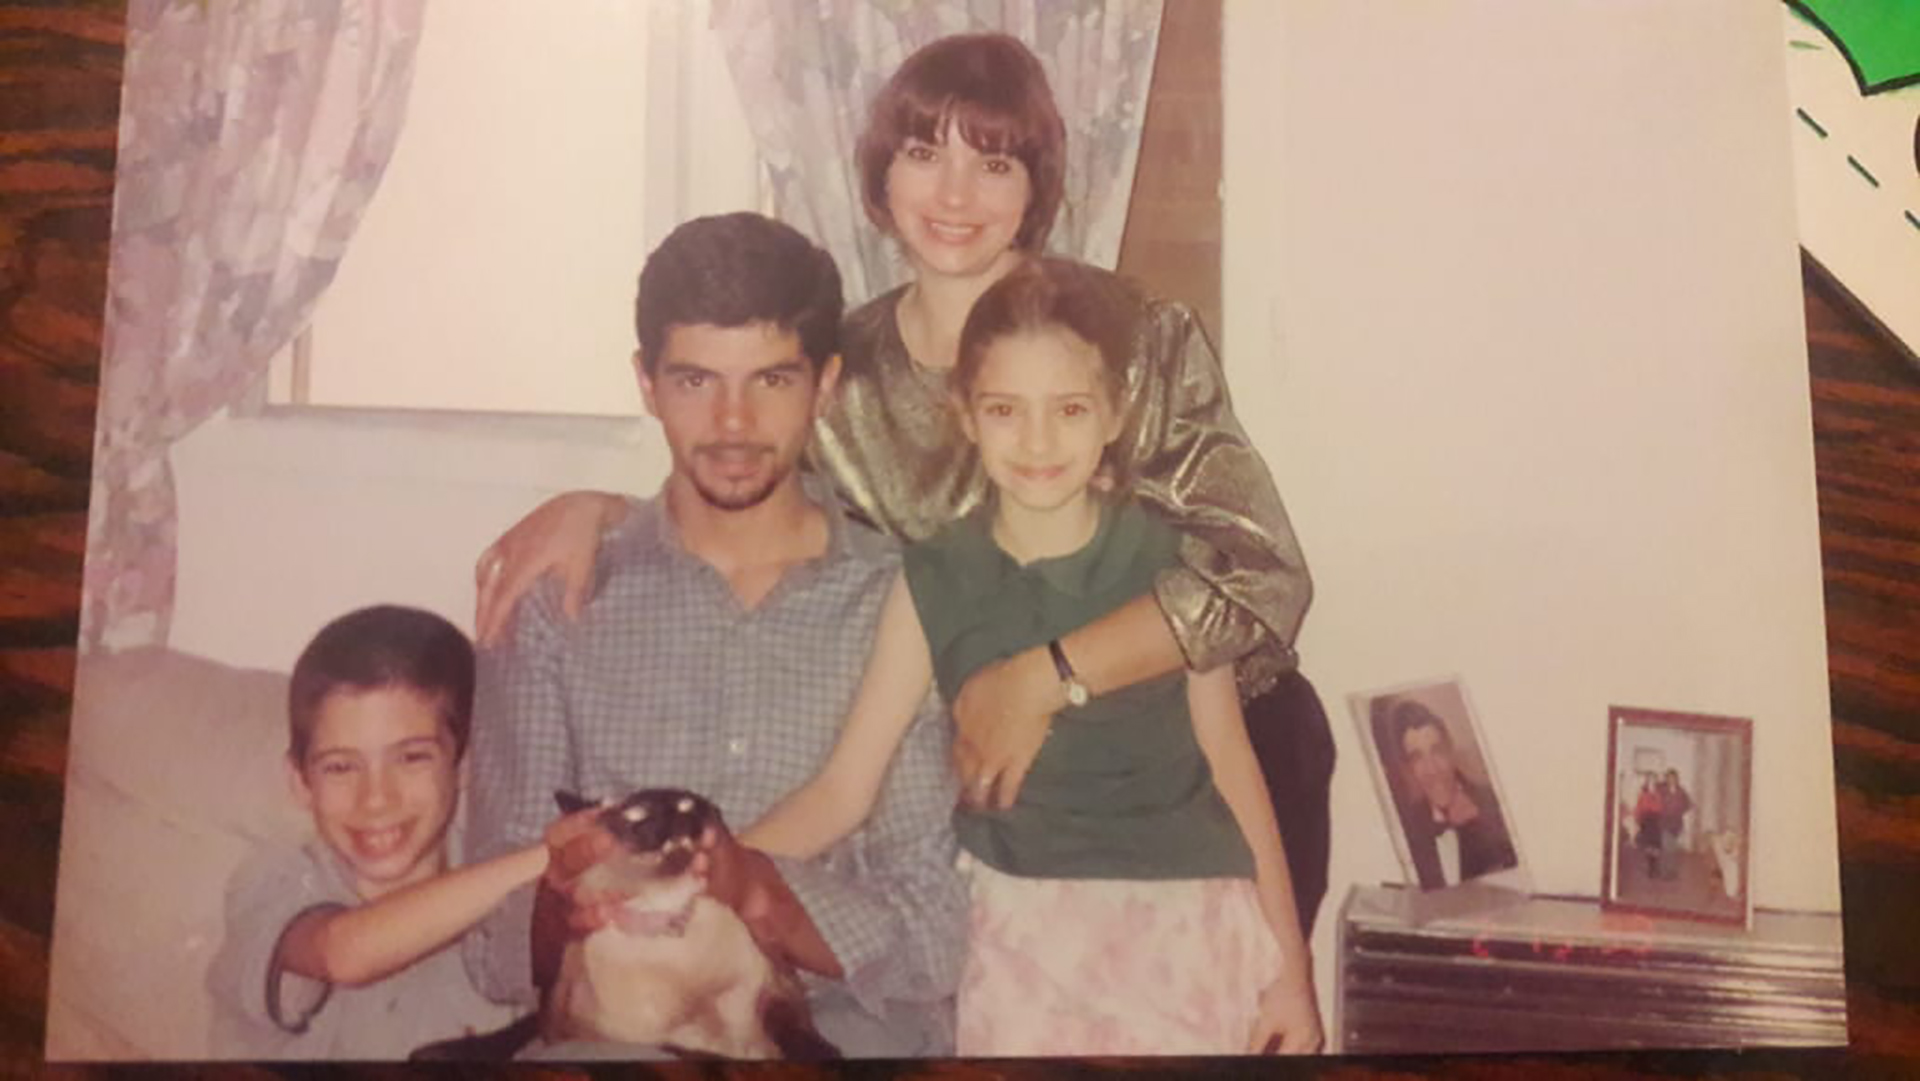 Mónica con sus tres hijos: Fernando, Marianela y Denis (abajo a la izquierda). "Es del año 1998, antes de que mi hermano mayor se fuera a vivir al exterior", cuenta Denis